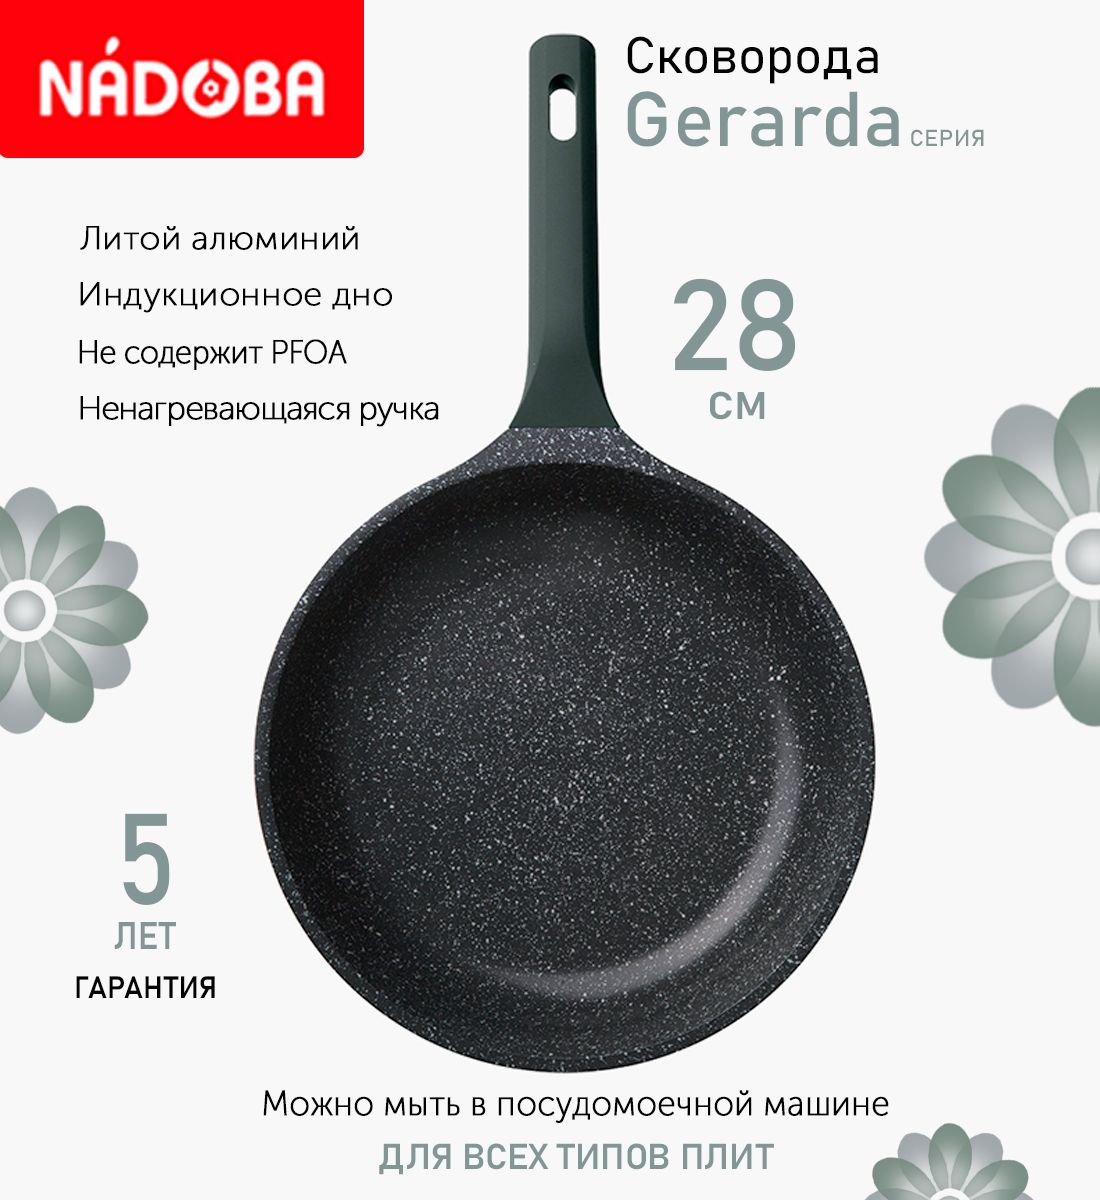 Сковорода с антипригарным покрытием 28 см Nadoba Gerarda, индукция